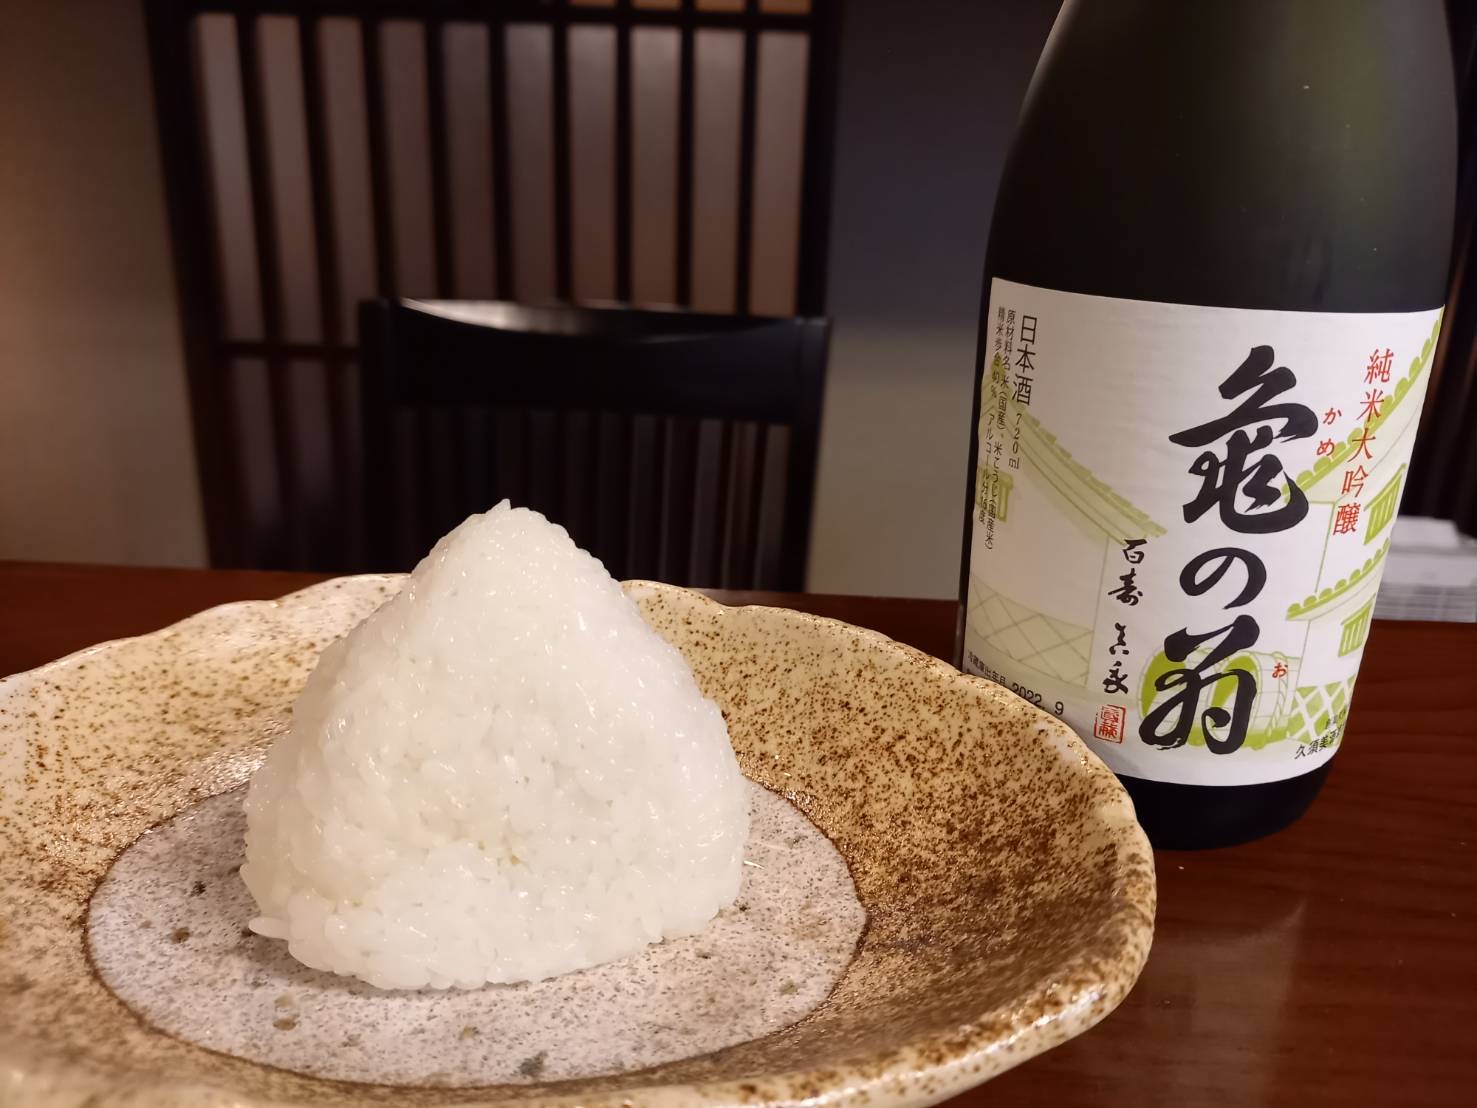 亀の尾の塩むすびと日本酒亀の翁純米大吟醸